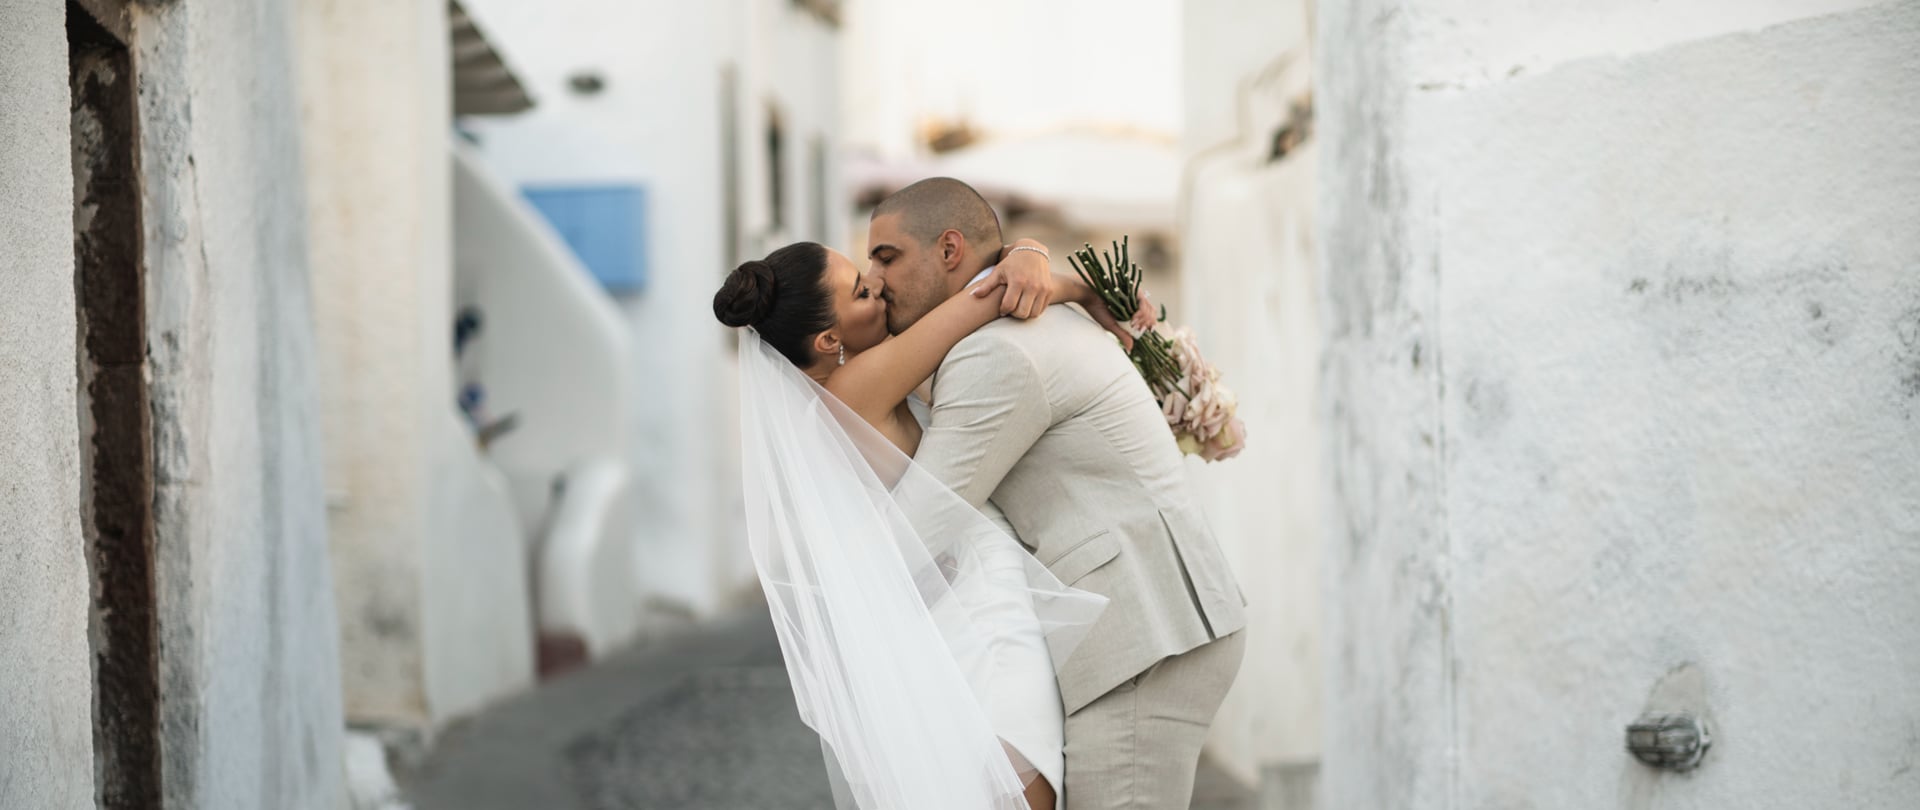 Stephanie & Johny Wedding Video Filmed at Santorini, Greece